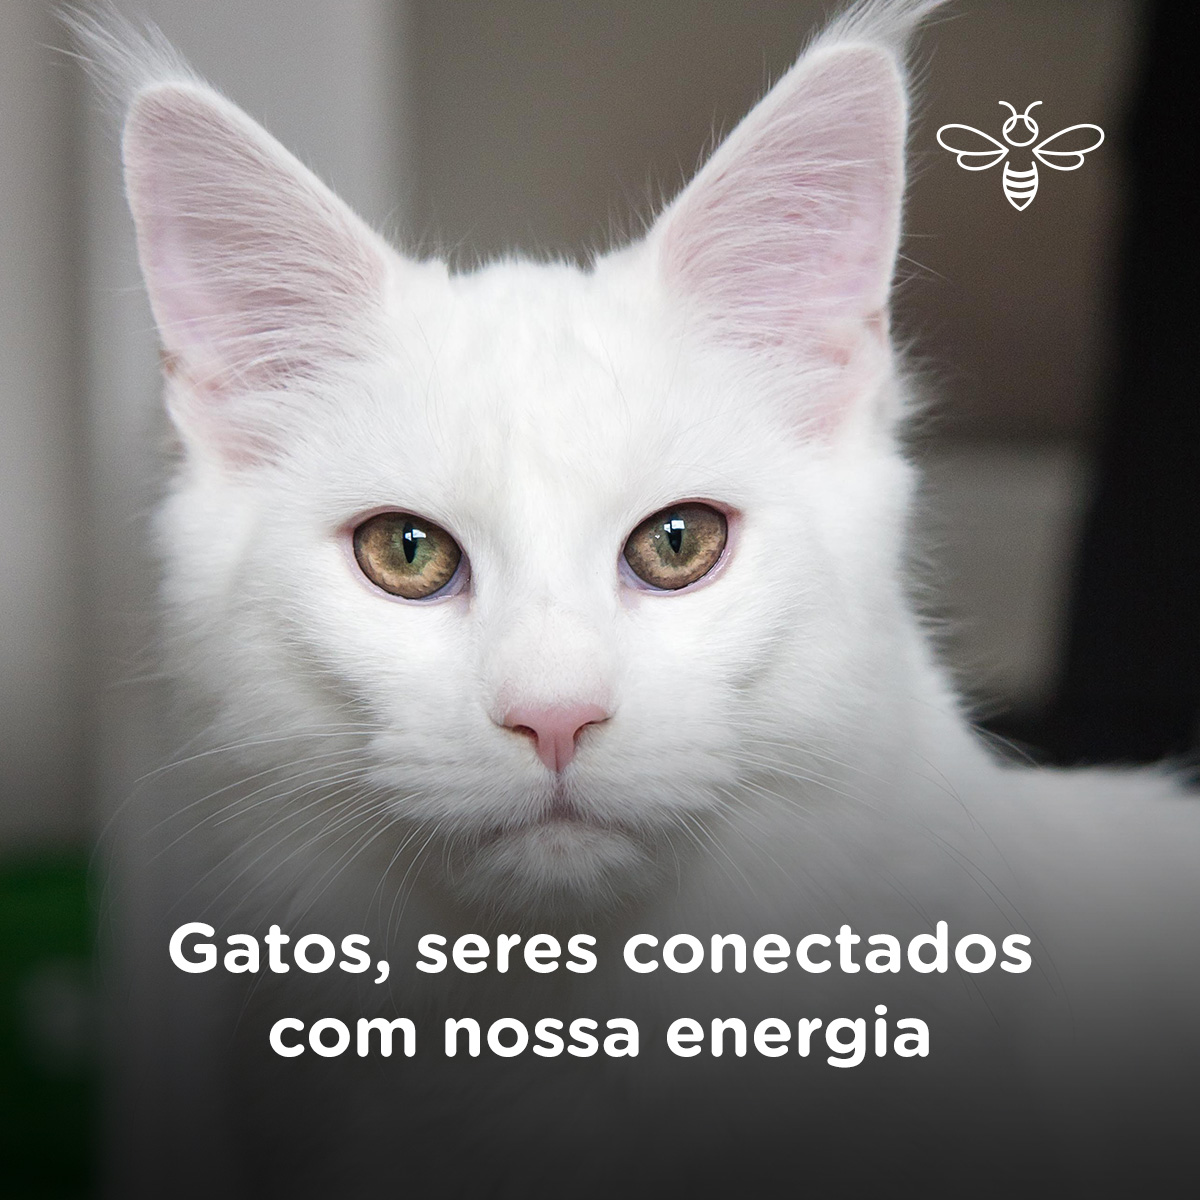 Gatos, seres conectados com nossa energia